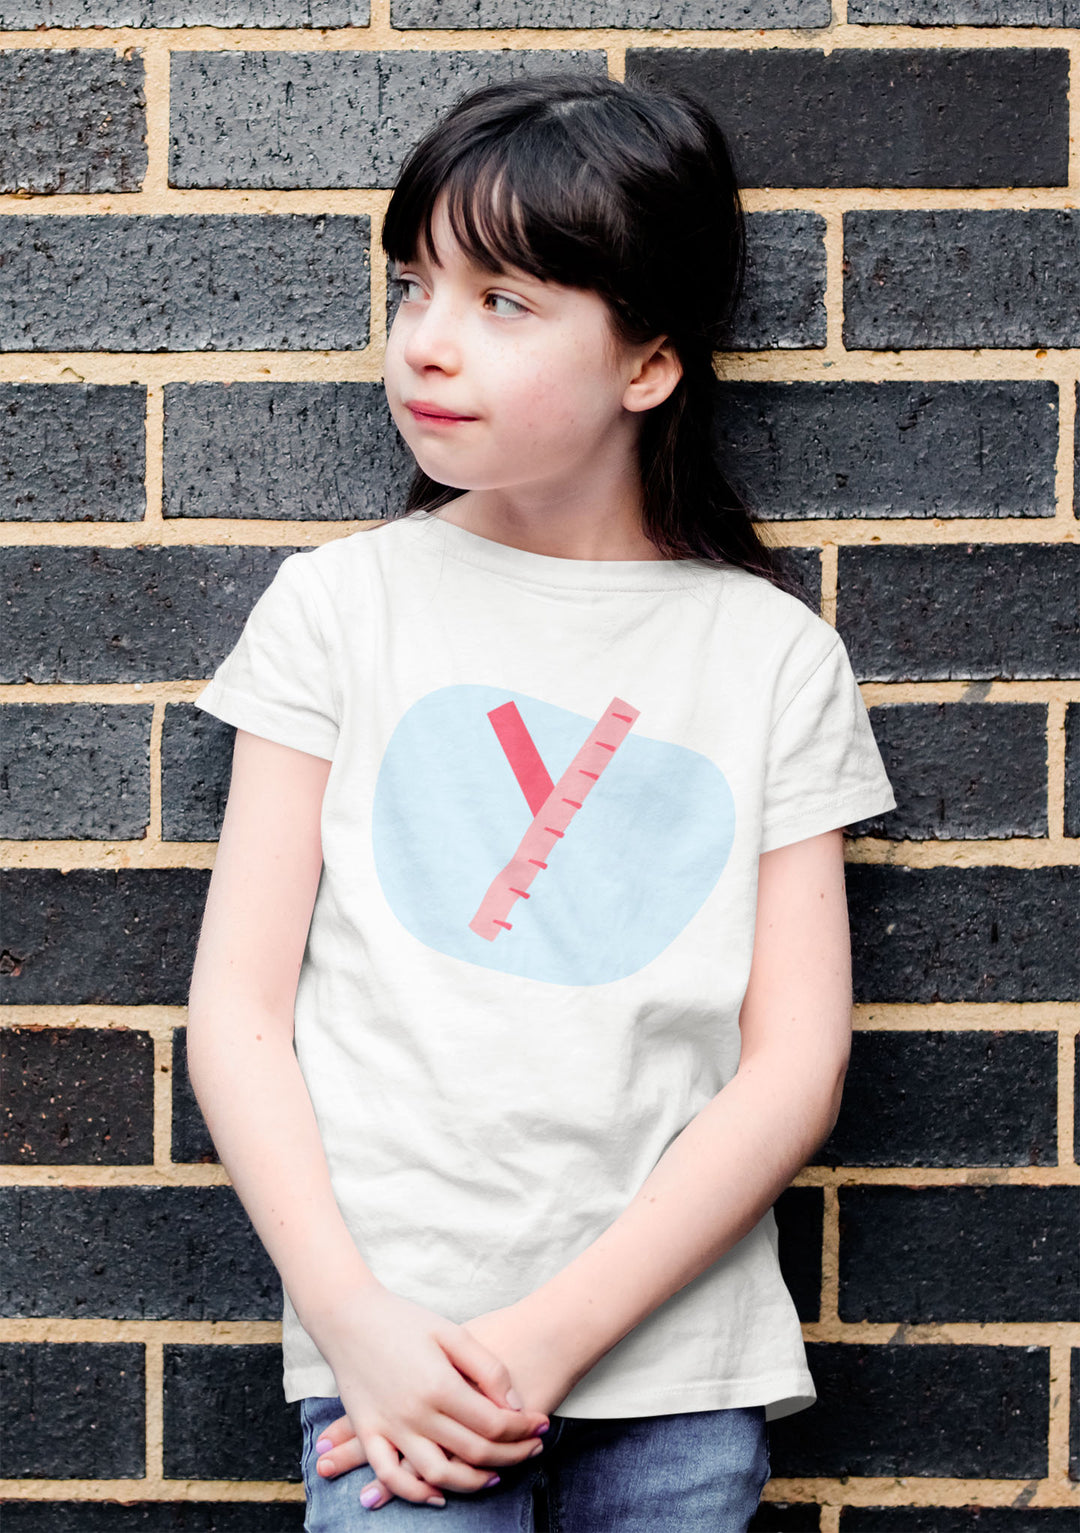 Y Letter Alphabet Raspberry Light Blue. Short Sleeve T-shirt For Toddler And Kids.